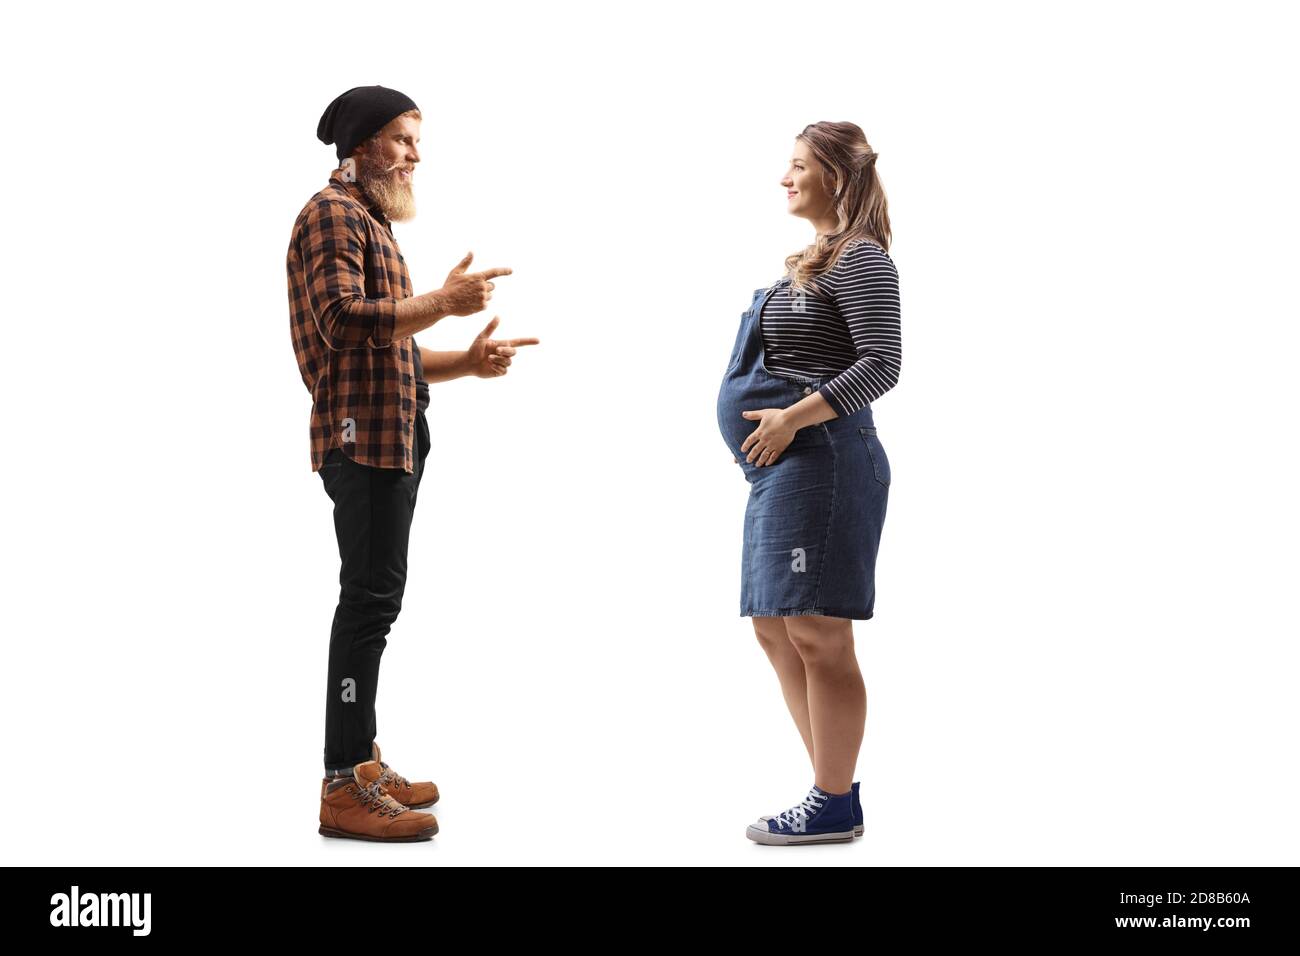 Foto di profilo a lunghezza intera di un ragazzo sopportato in piedi e. parlando con una donna incinta isolata su sfondo bianco Foto Stock